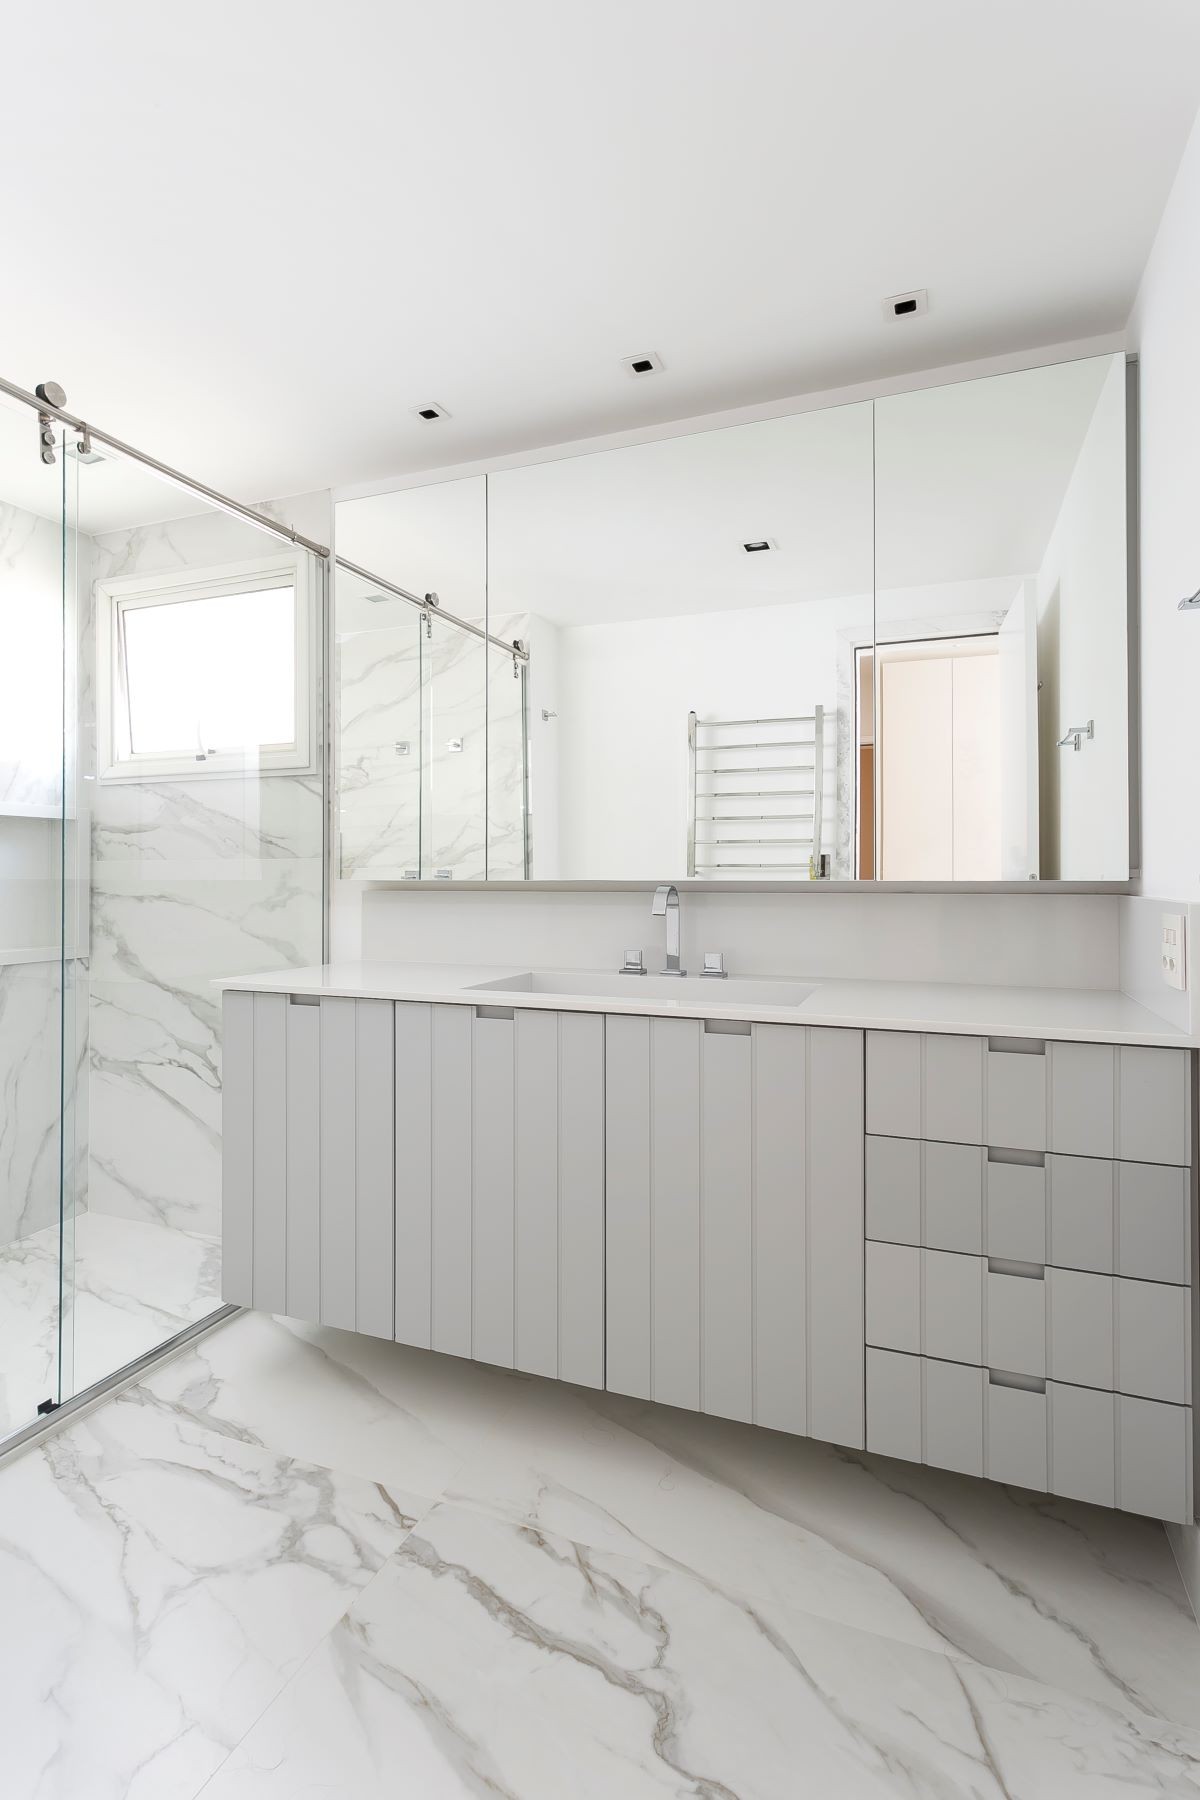 BANHEIRO | Clean e moderno, o banheiro reflete a decoração escolhida. Mármore é da Potenza Mármores (Foto: Renata D’Almeida / Divulgação)